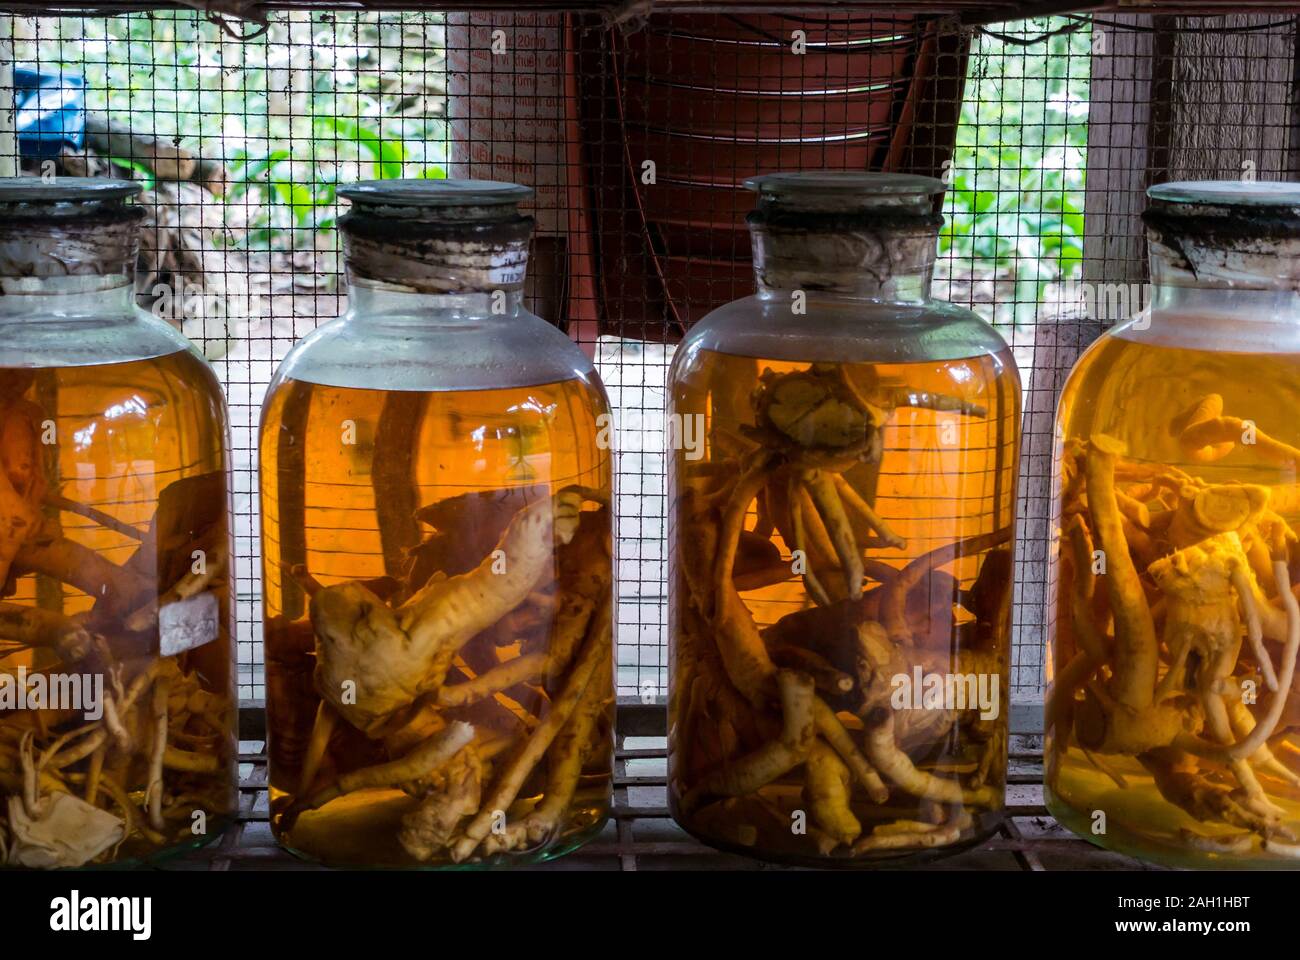 Pflanzenwurzeln gebeizt & in Gläsern konserviert, Thai Hai ethnischen Dorf traditionelle Lebensweise, Thai Nguyen, Provinz Northern Vietnam, Asien Stockfoto